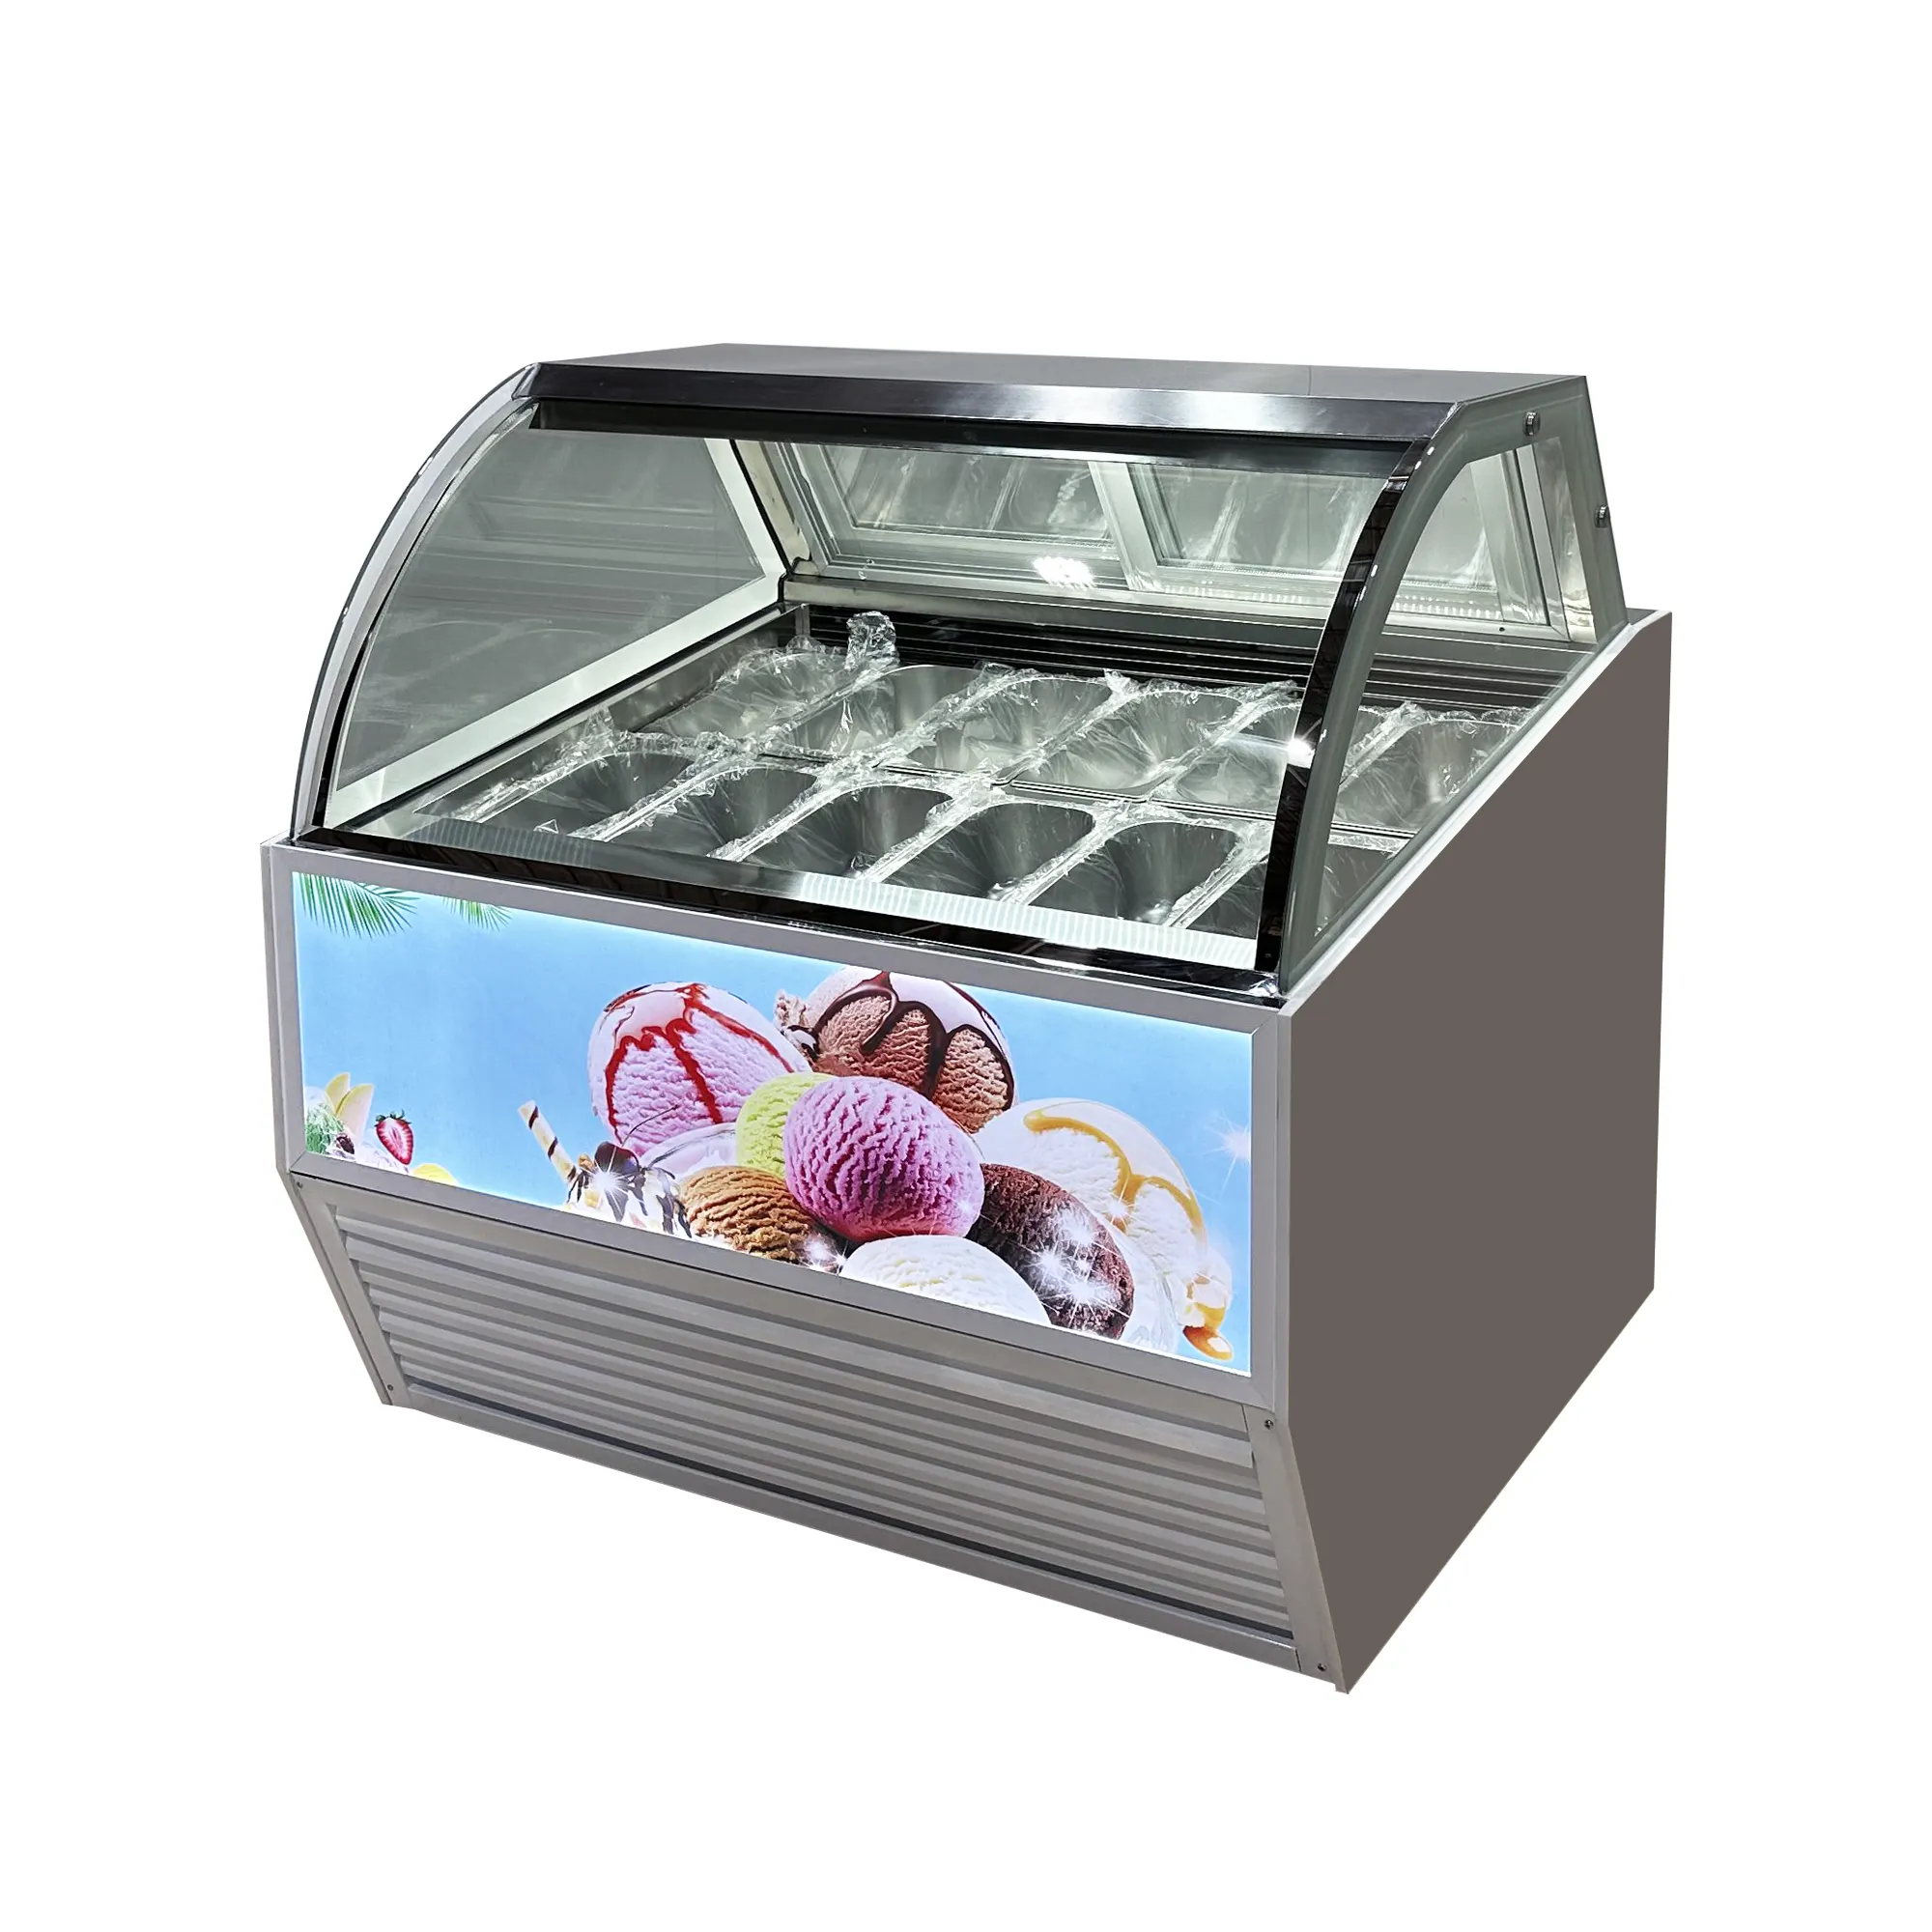 10 / 12 / 14 / 16 /18 / 20 Pans Italian Ice Cream Display Réfrigérateur et congélateur